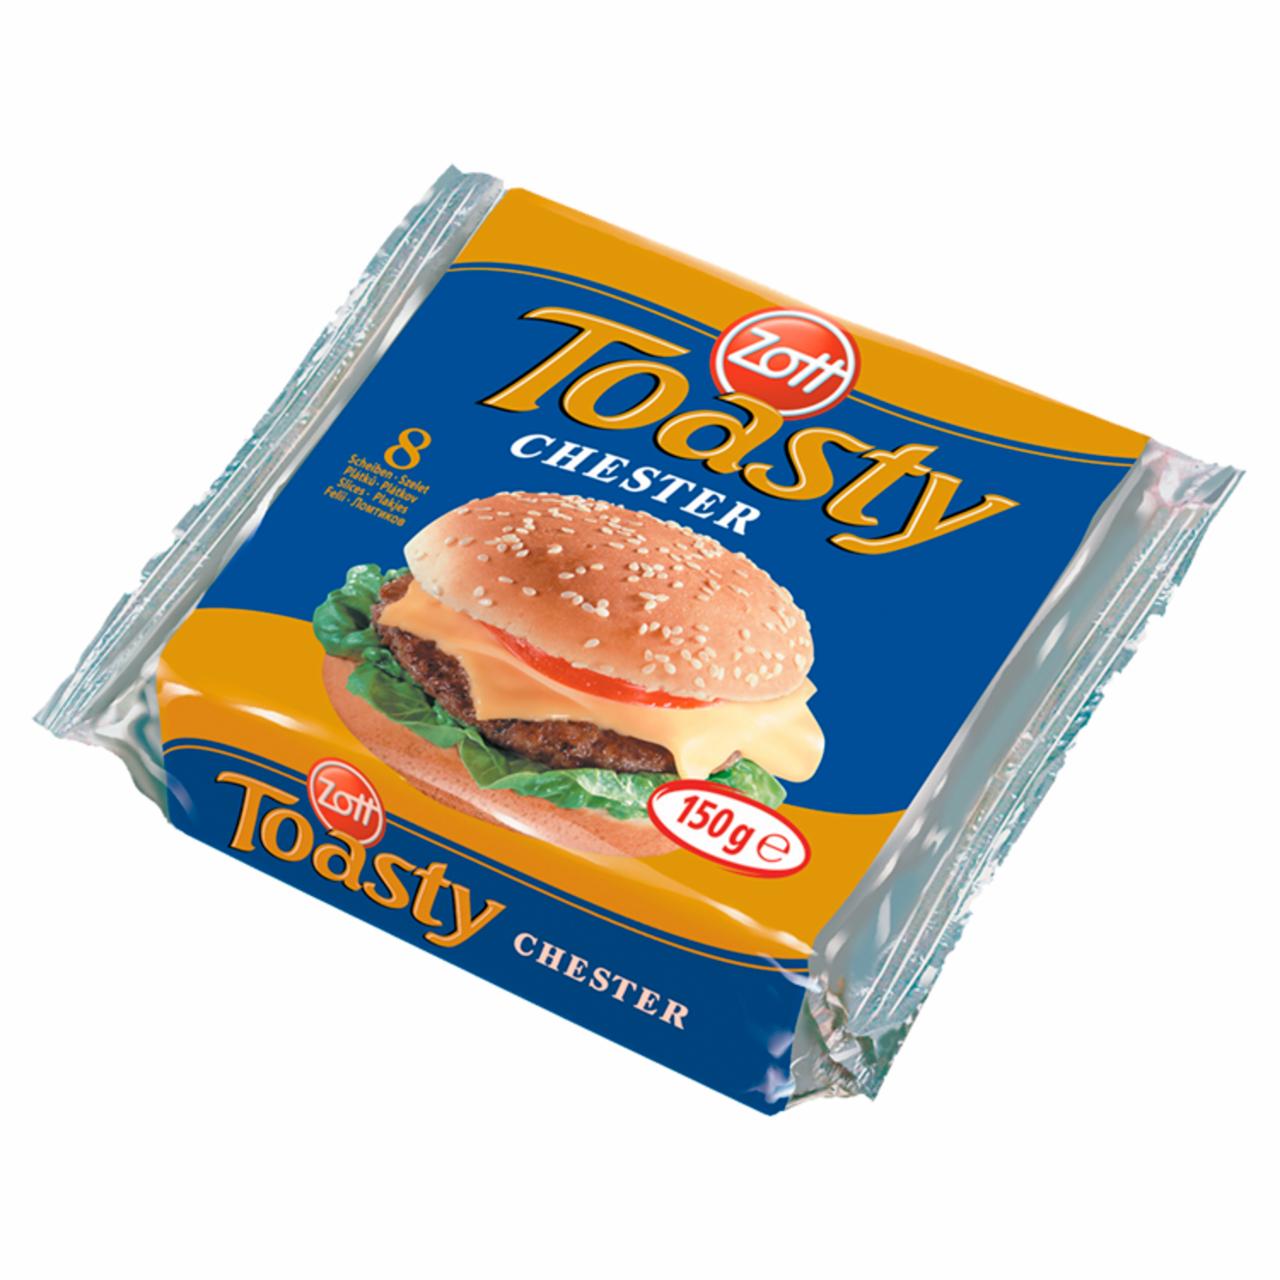 Képek - Zott Toasty Chester szeletelt, cheddar ízű, zsíros ömlesztett sajt 8 x 18,75 g (150 g)